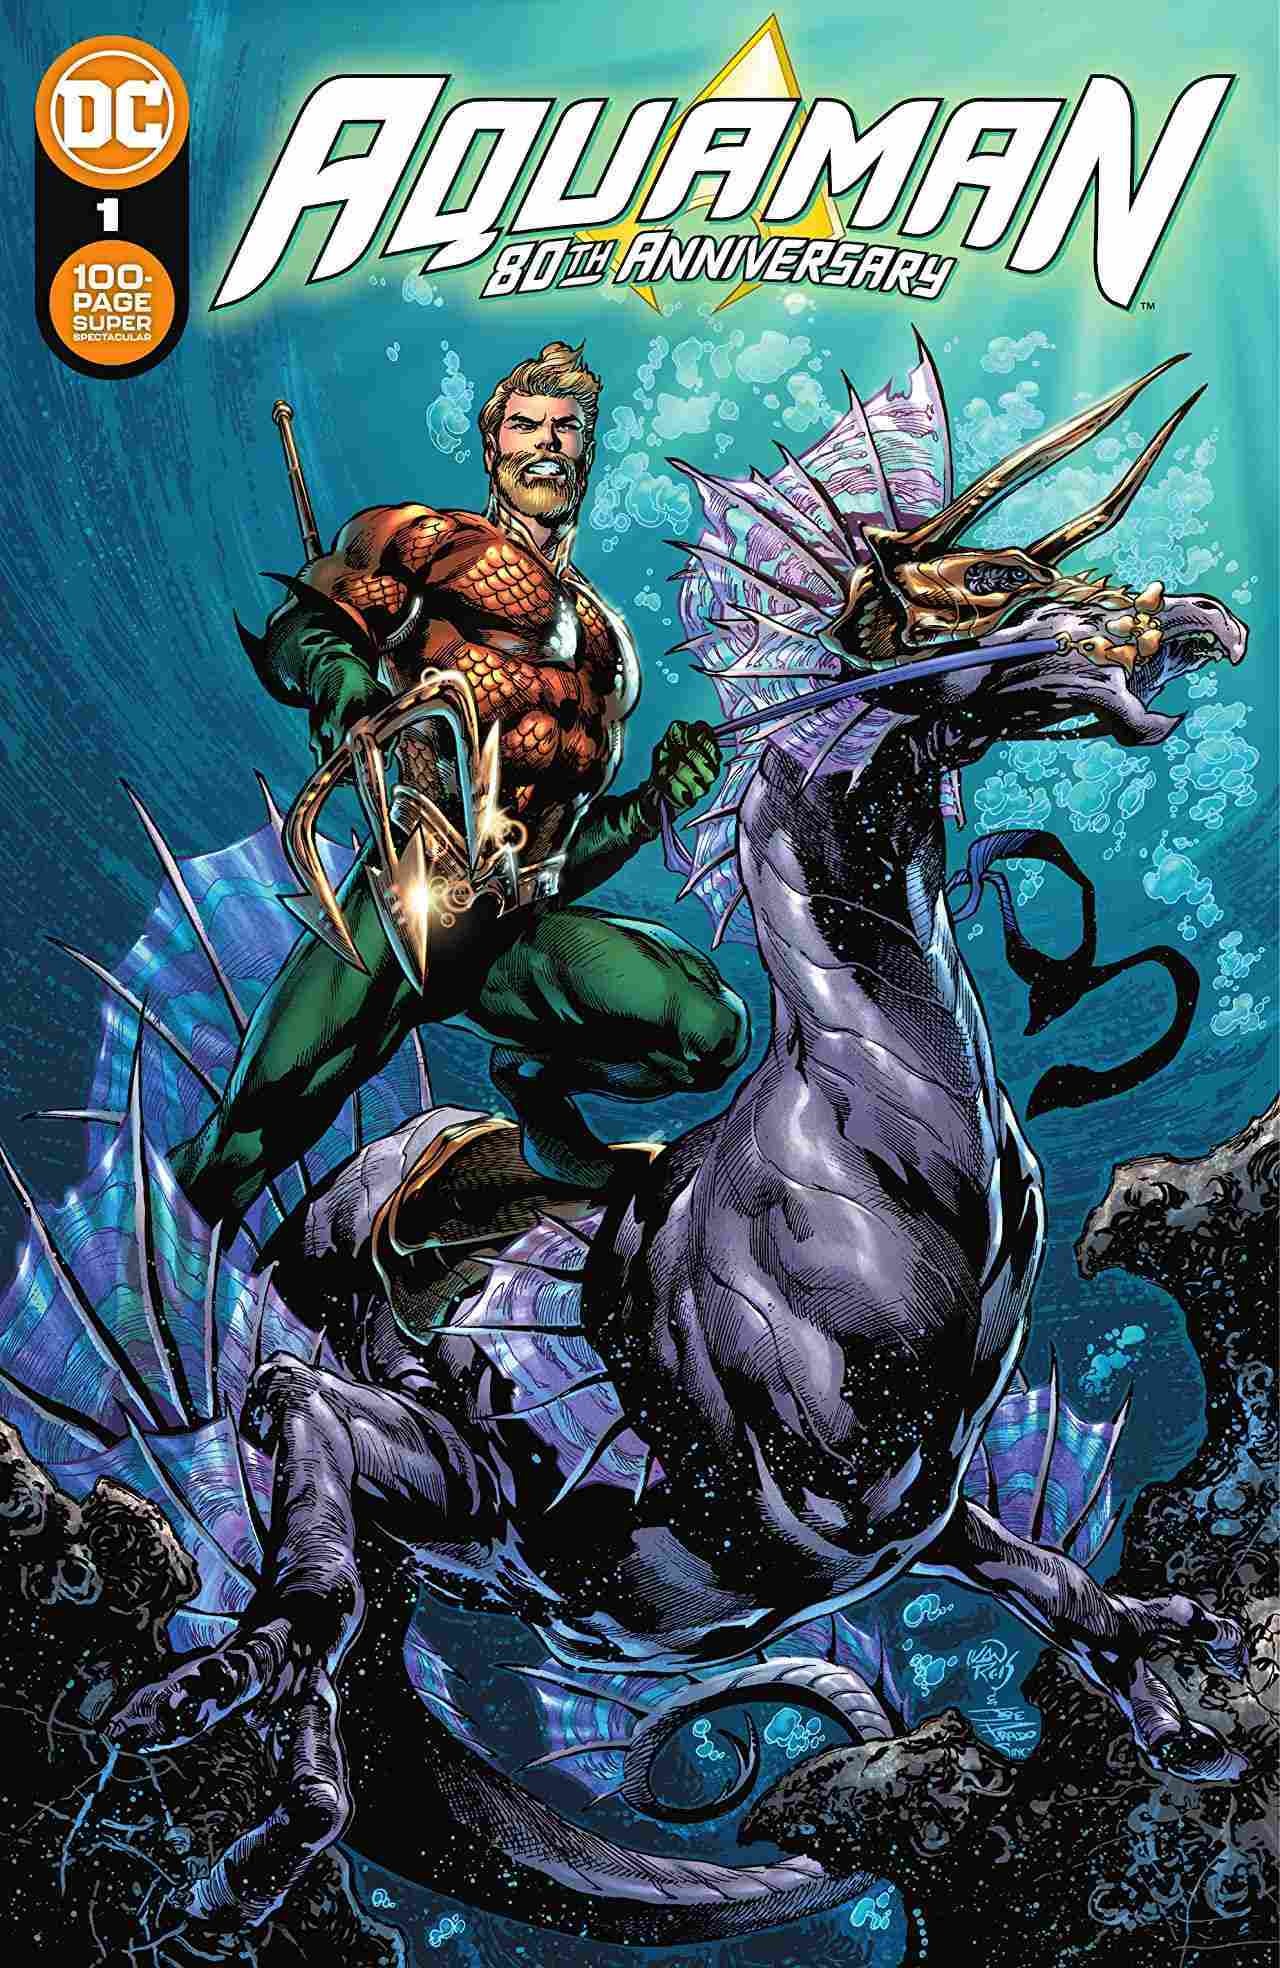 Super espectacular de 100 páginas del 80 aniversario de Aquaman # 1